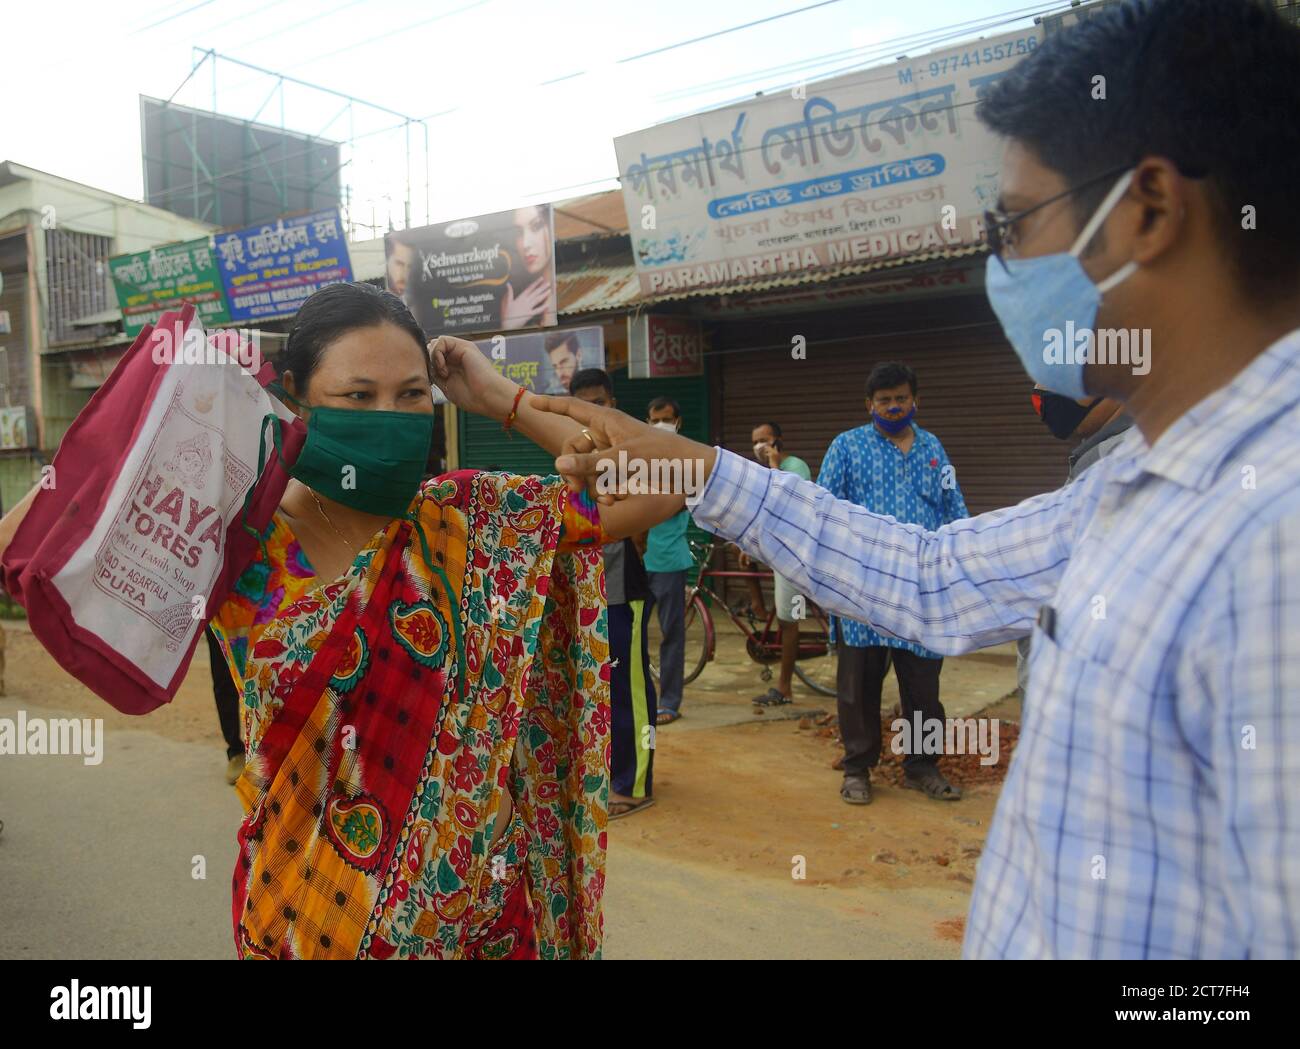 Le persone senza maschera sono multate per non aver ascoltato il Covid – 19 regole messe in atto dal governo, come misura protettiva contro la pandemia del coronavirus che sta uccidendo migliaia di persone in India. Agartala, Tripura, India. Foto Stock